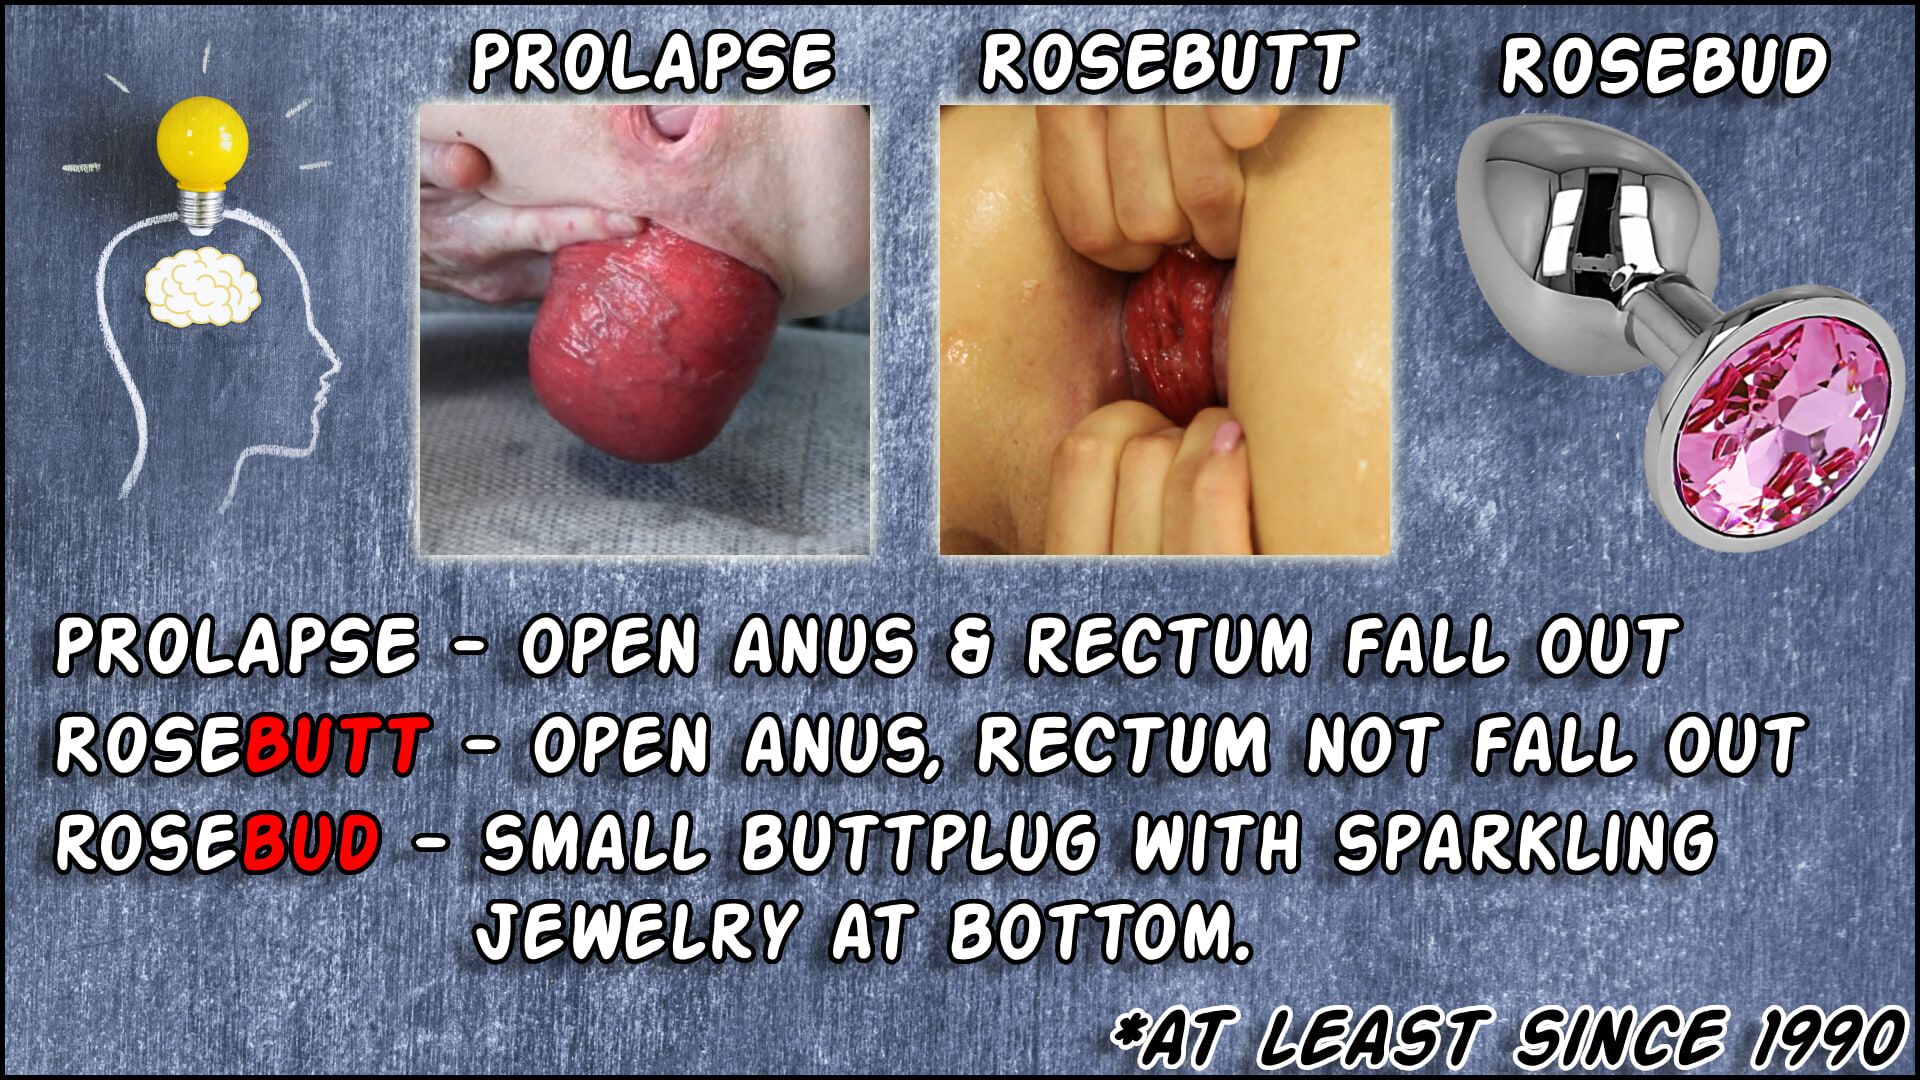 rosebutt and prolapse ARE NOT rosebud